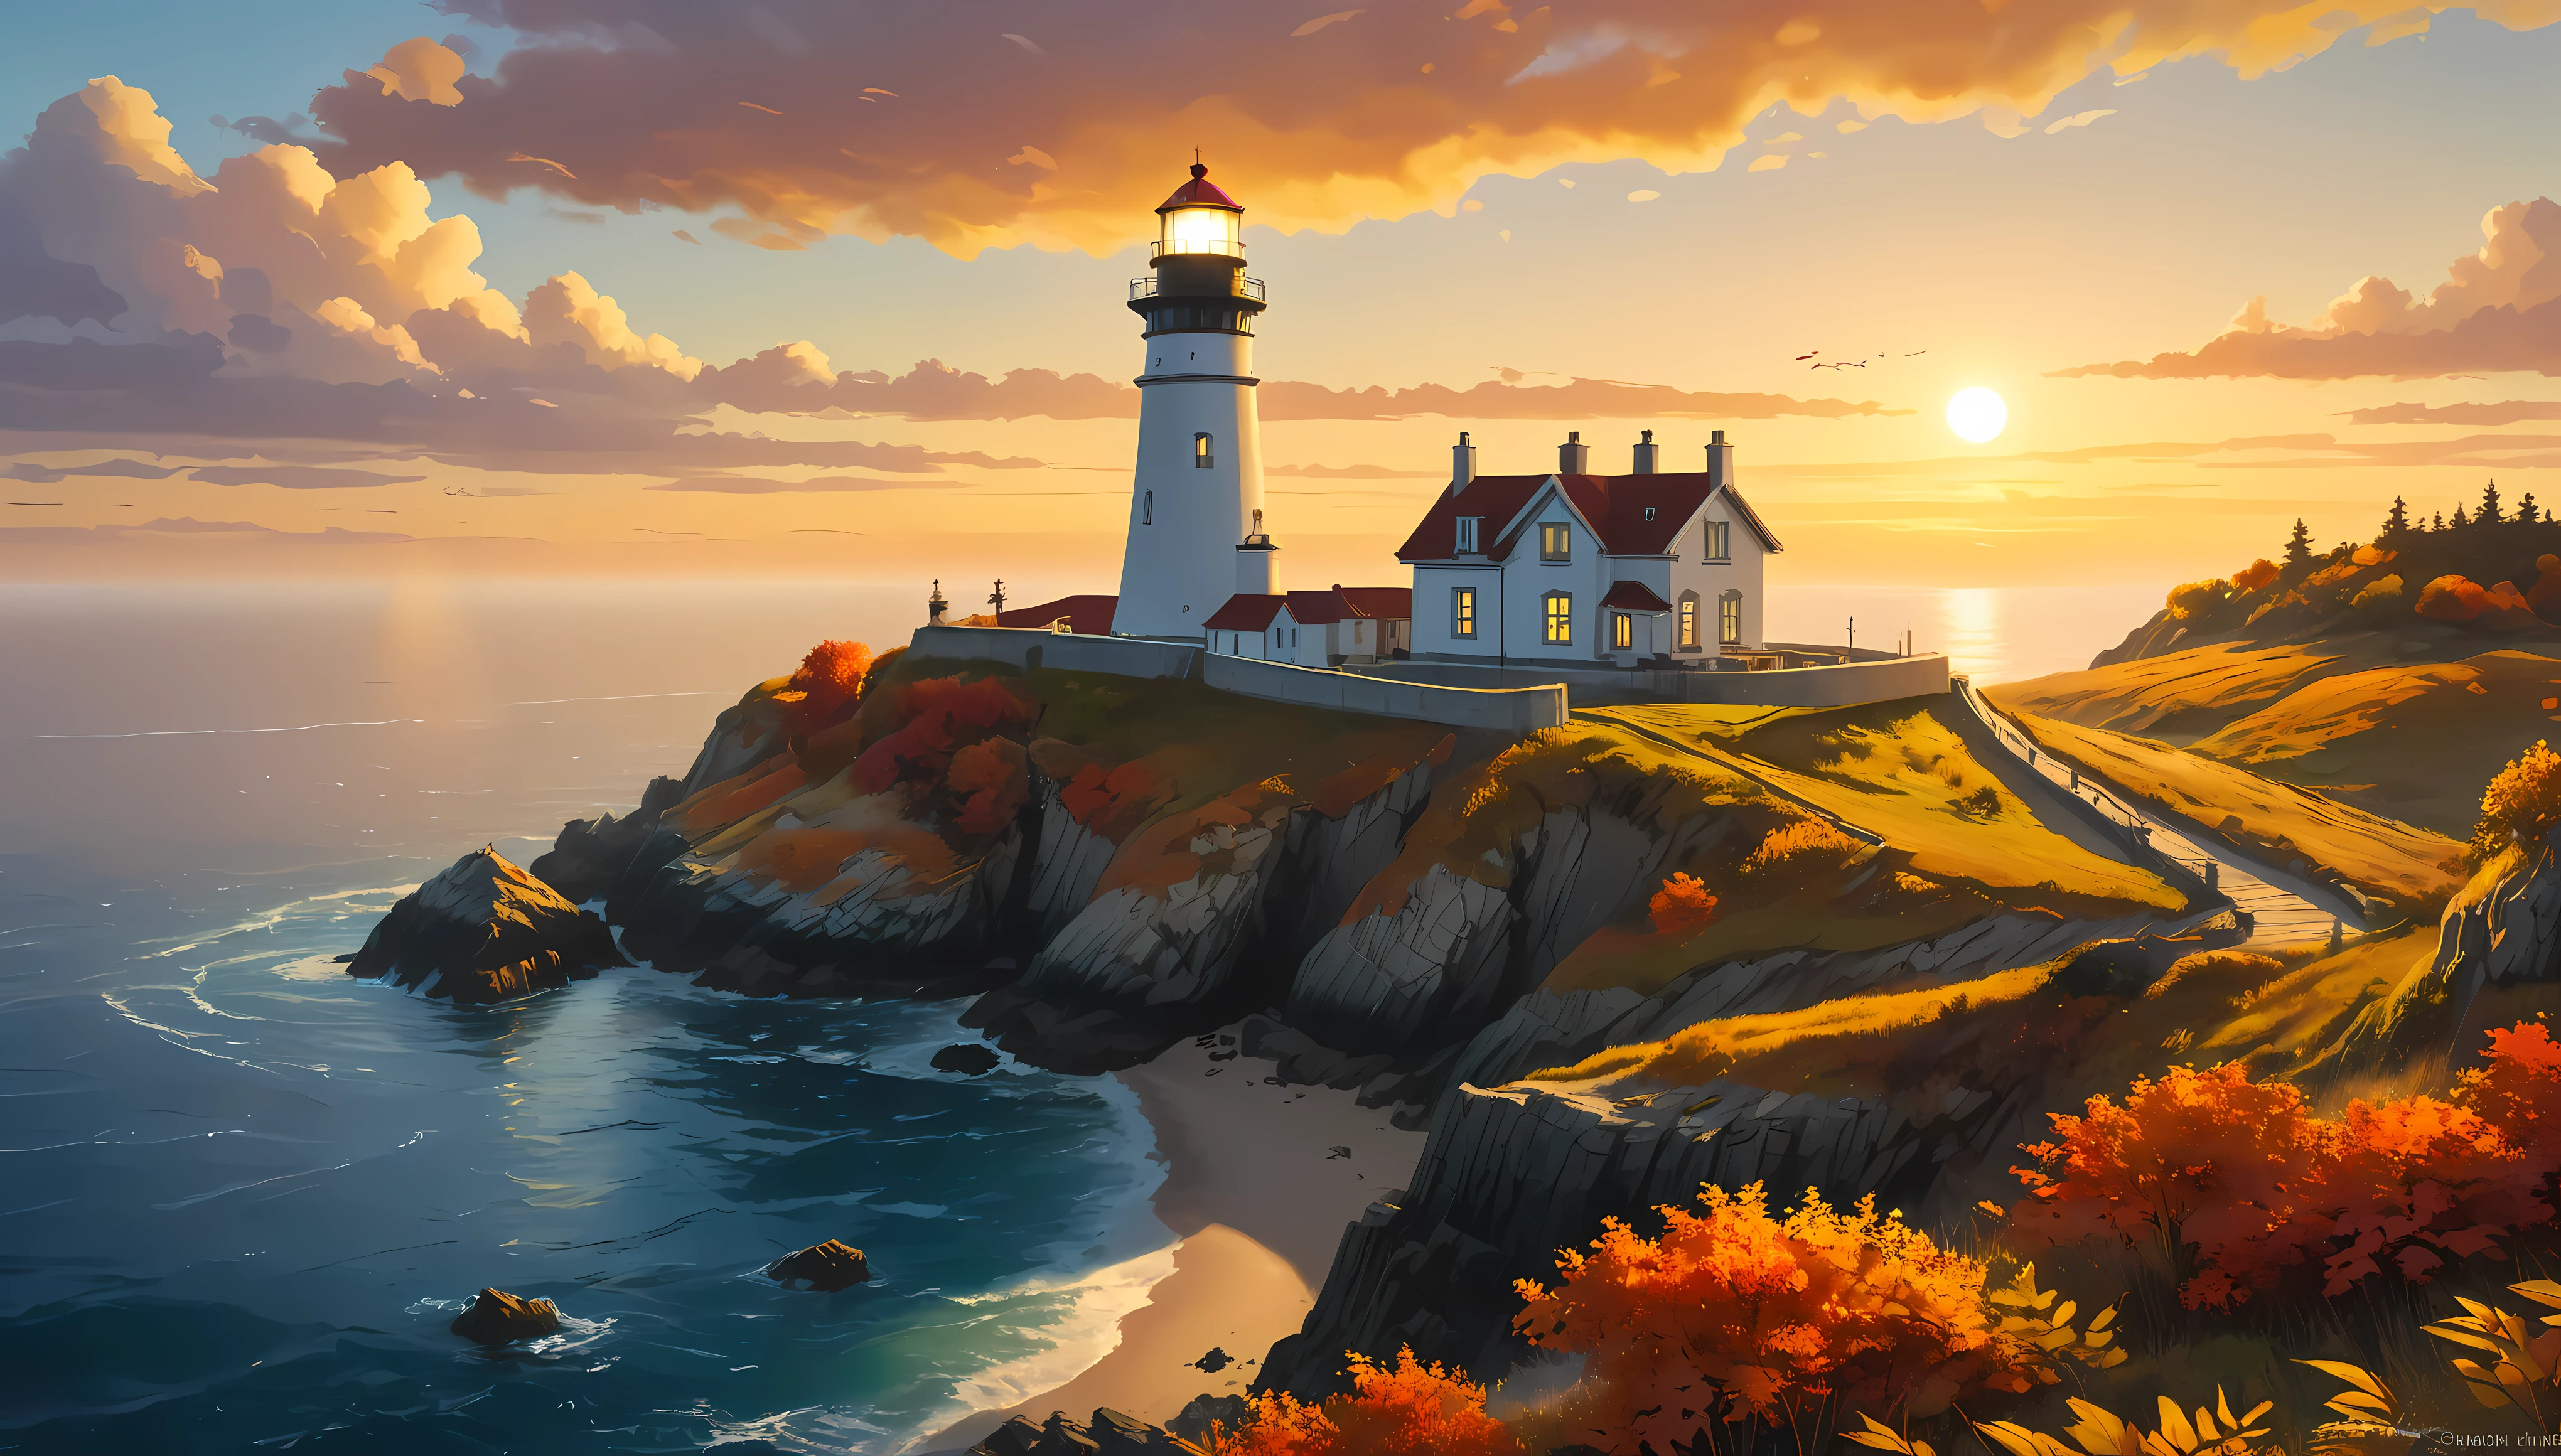 崖から灯台が見渡せ、広大な海が見える, 夕日の光を浴びる魅惑的な灯台,((ゴールデンアワータイム):1.2),((雄大な風景):1.2),((秋の夕焼け空):1.1),繊細なゴールデンアワーの光, 素晴らしい壁紙, 美しい環境, 楽観的なマットペインティング, 美しいデジタルアート, 美しく緻密なシーン, UHD地下, UHD 風景, 壮大なコンセプトアート, 美しい灯台. |(最大16K解像度の傑作), 最高の品質, (非常に詳細な CG Unity 16k 壁紙品質),(柔らかい色の 16K の非常に詳細なデジタル アート),非常に詳細な. | 完璧な画像,16k UE5,公式絵画, 超微細, 被写界深度, コントラストなし, 鮮明でシャープなフォーカス, プロ, ぼかしなし. | (((もっと詳しく))).